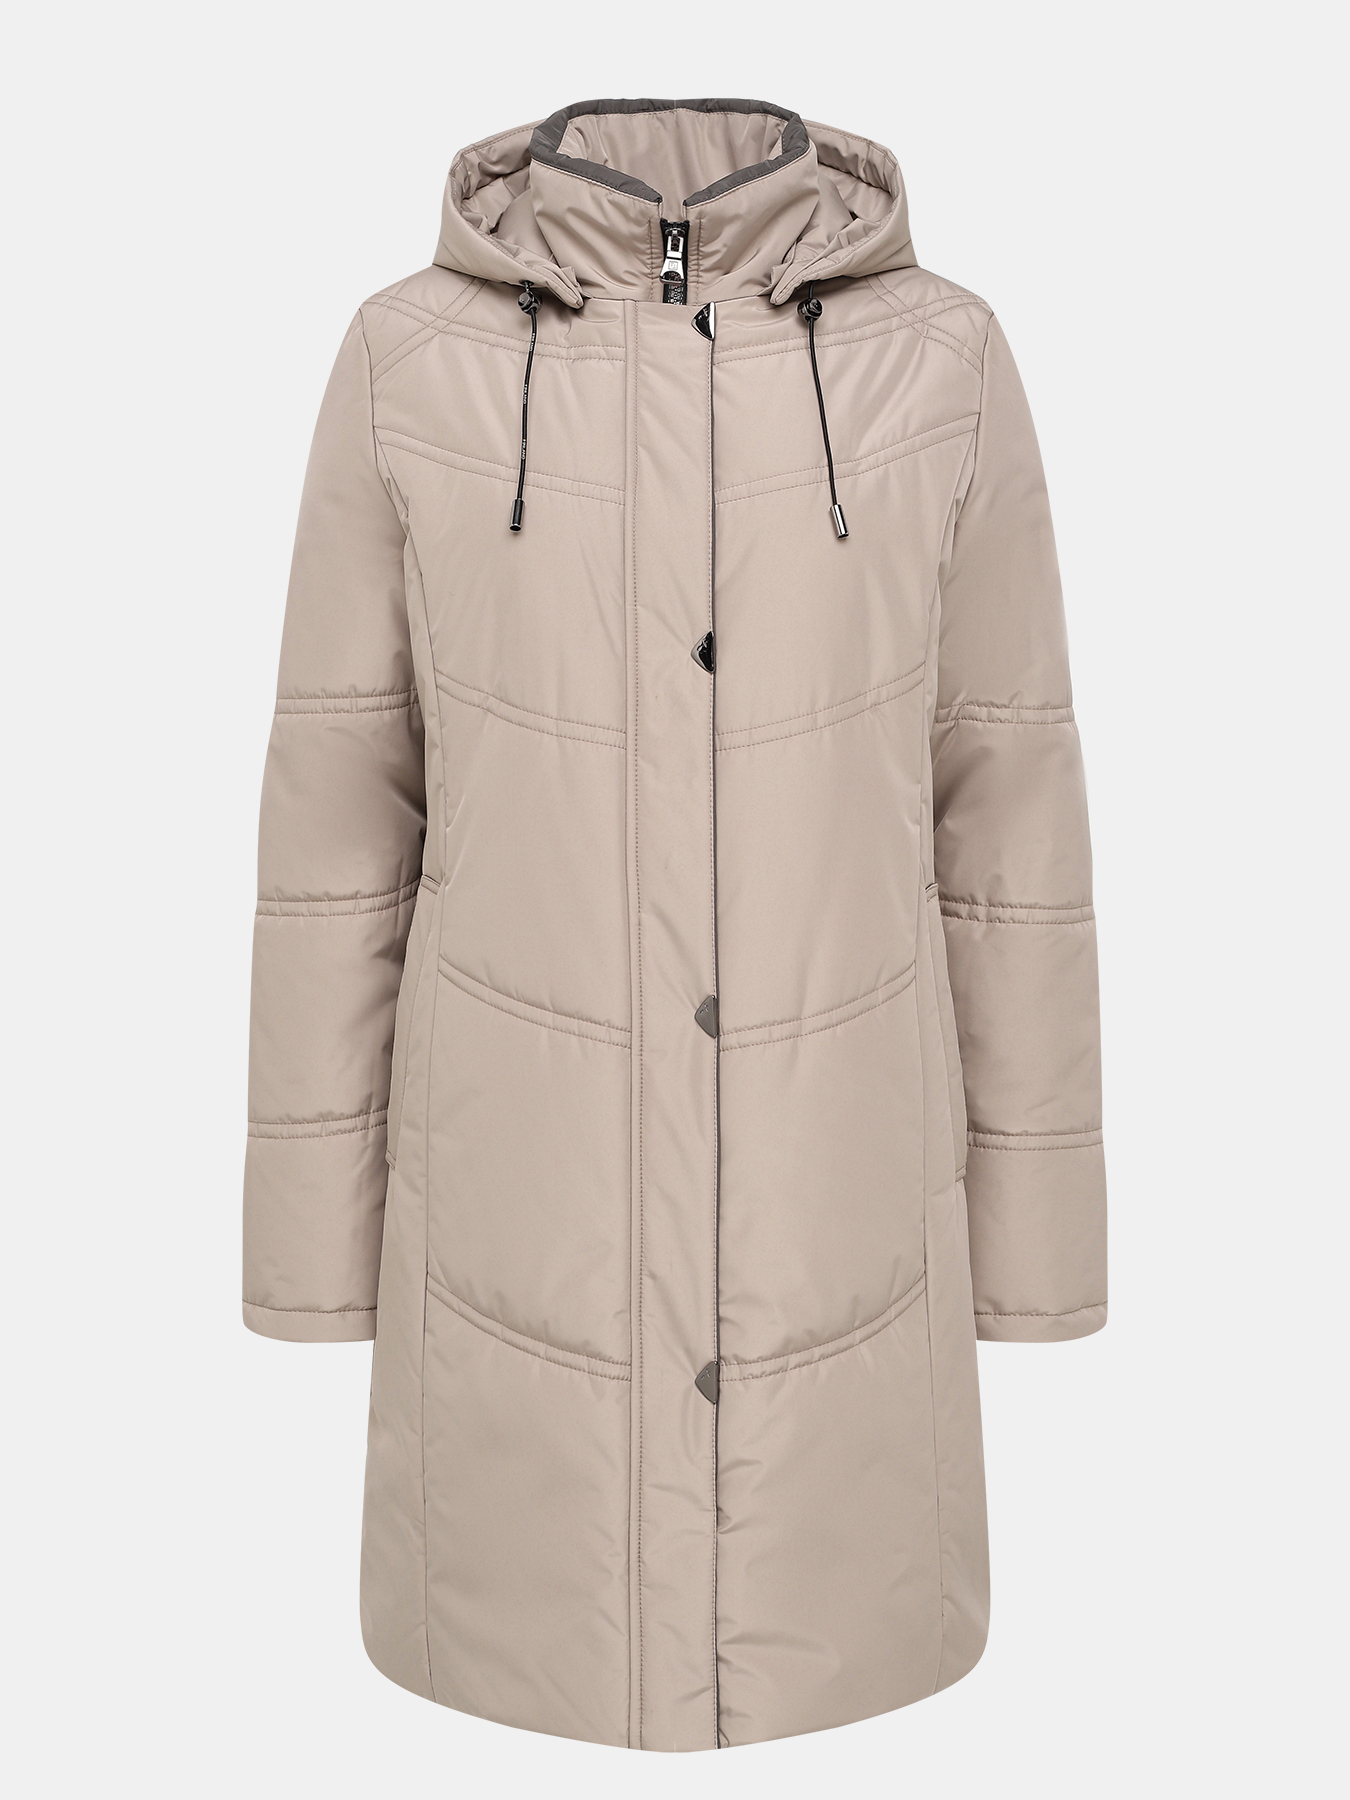 Пальто зимнее Maritta 433523-021, цвет бежевый, размер 46